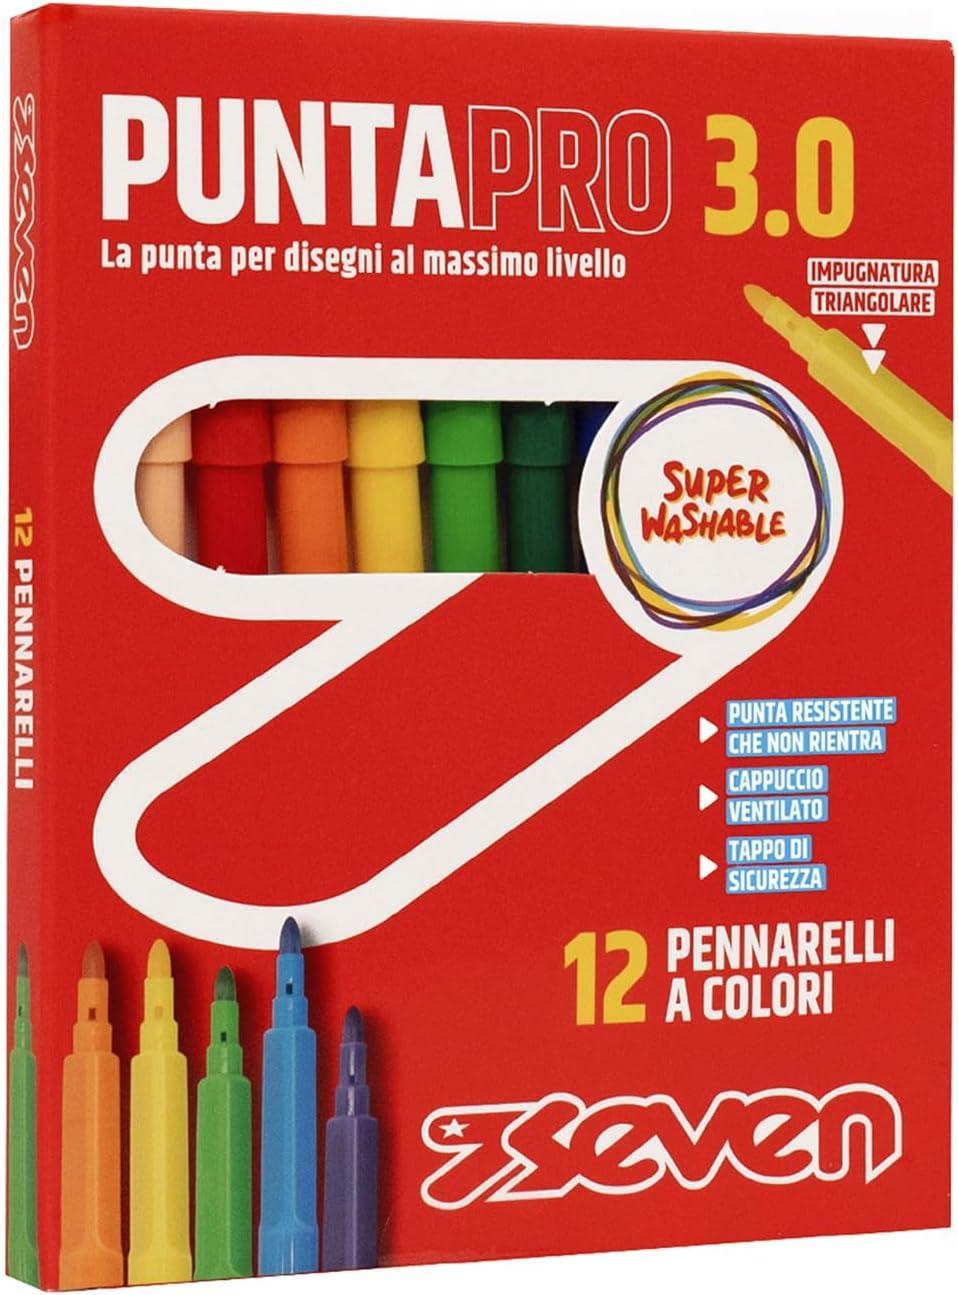 seven pennarelli punta pro 3.0 12pz seven